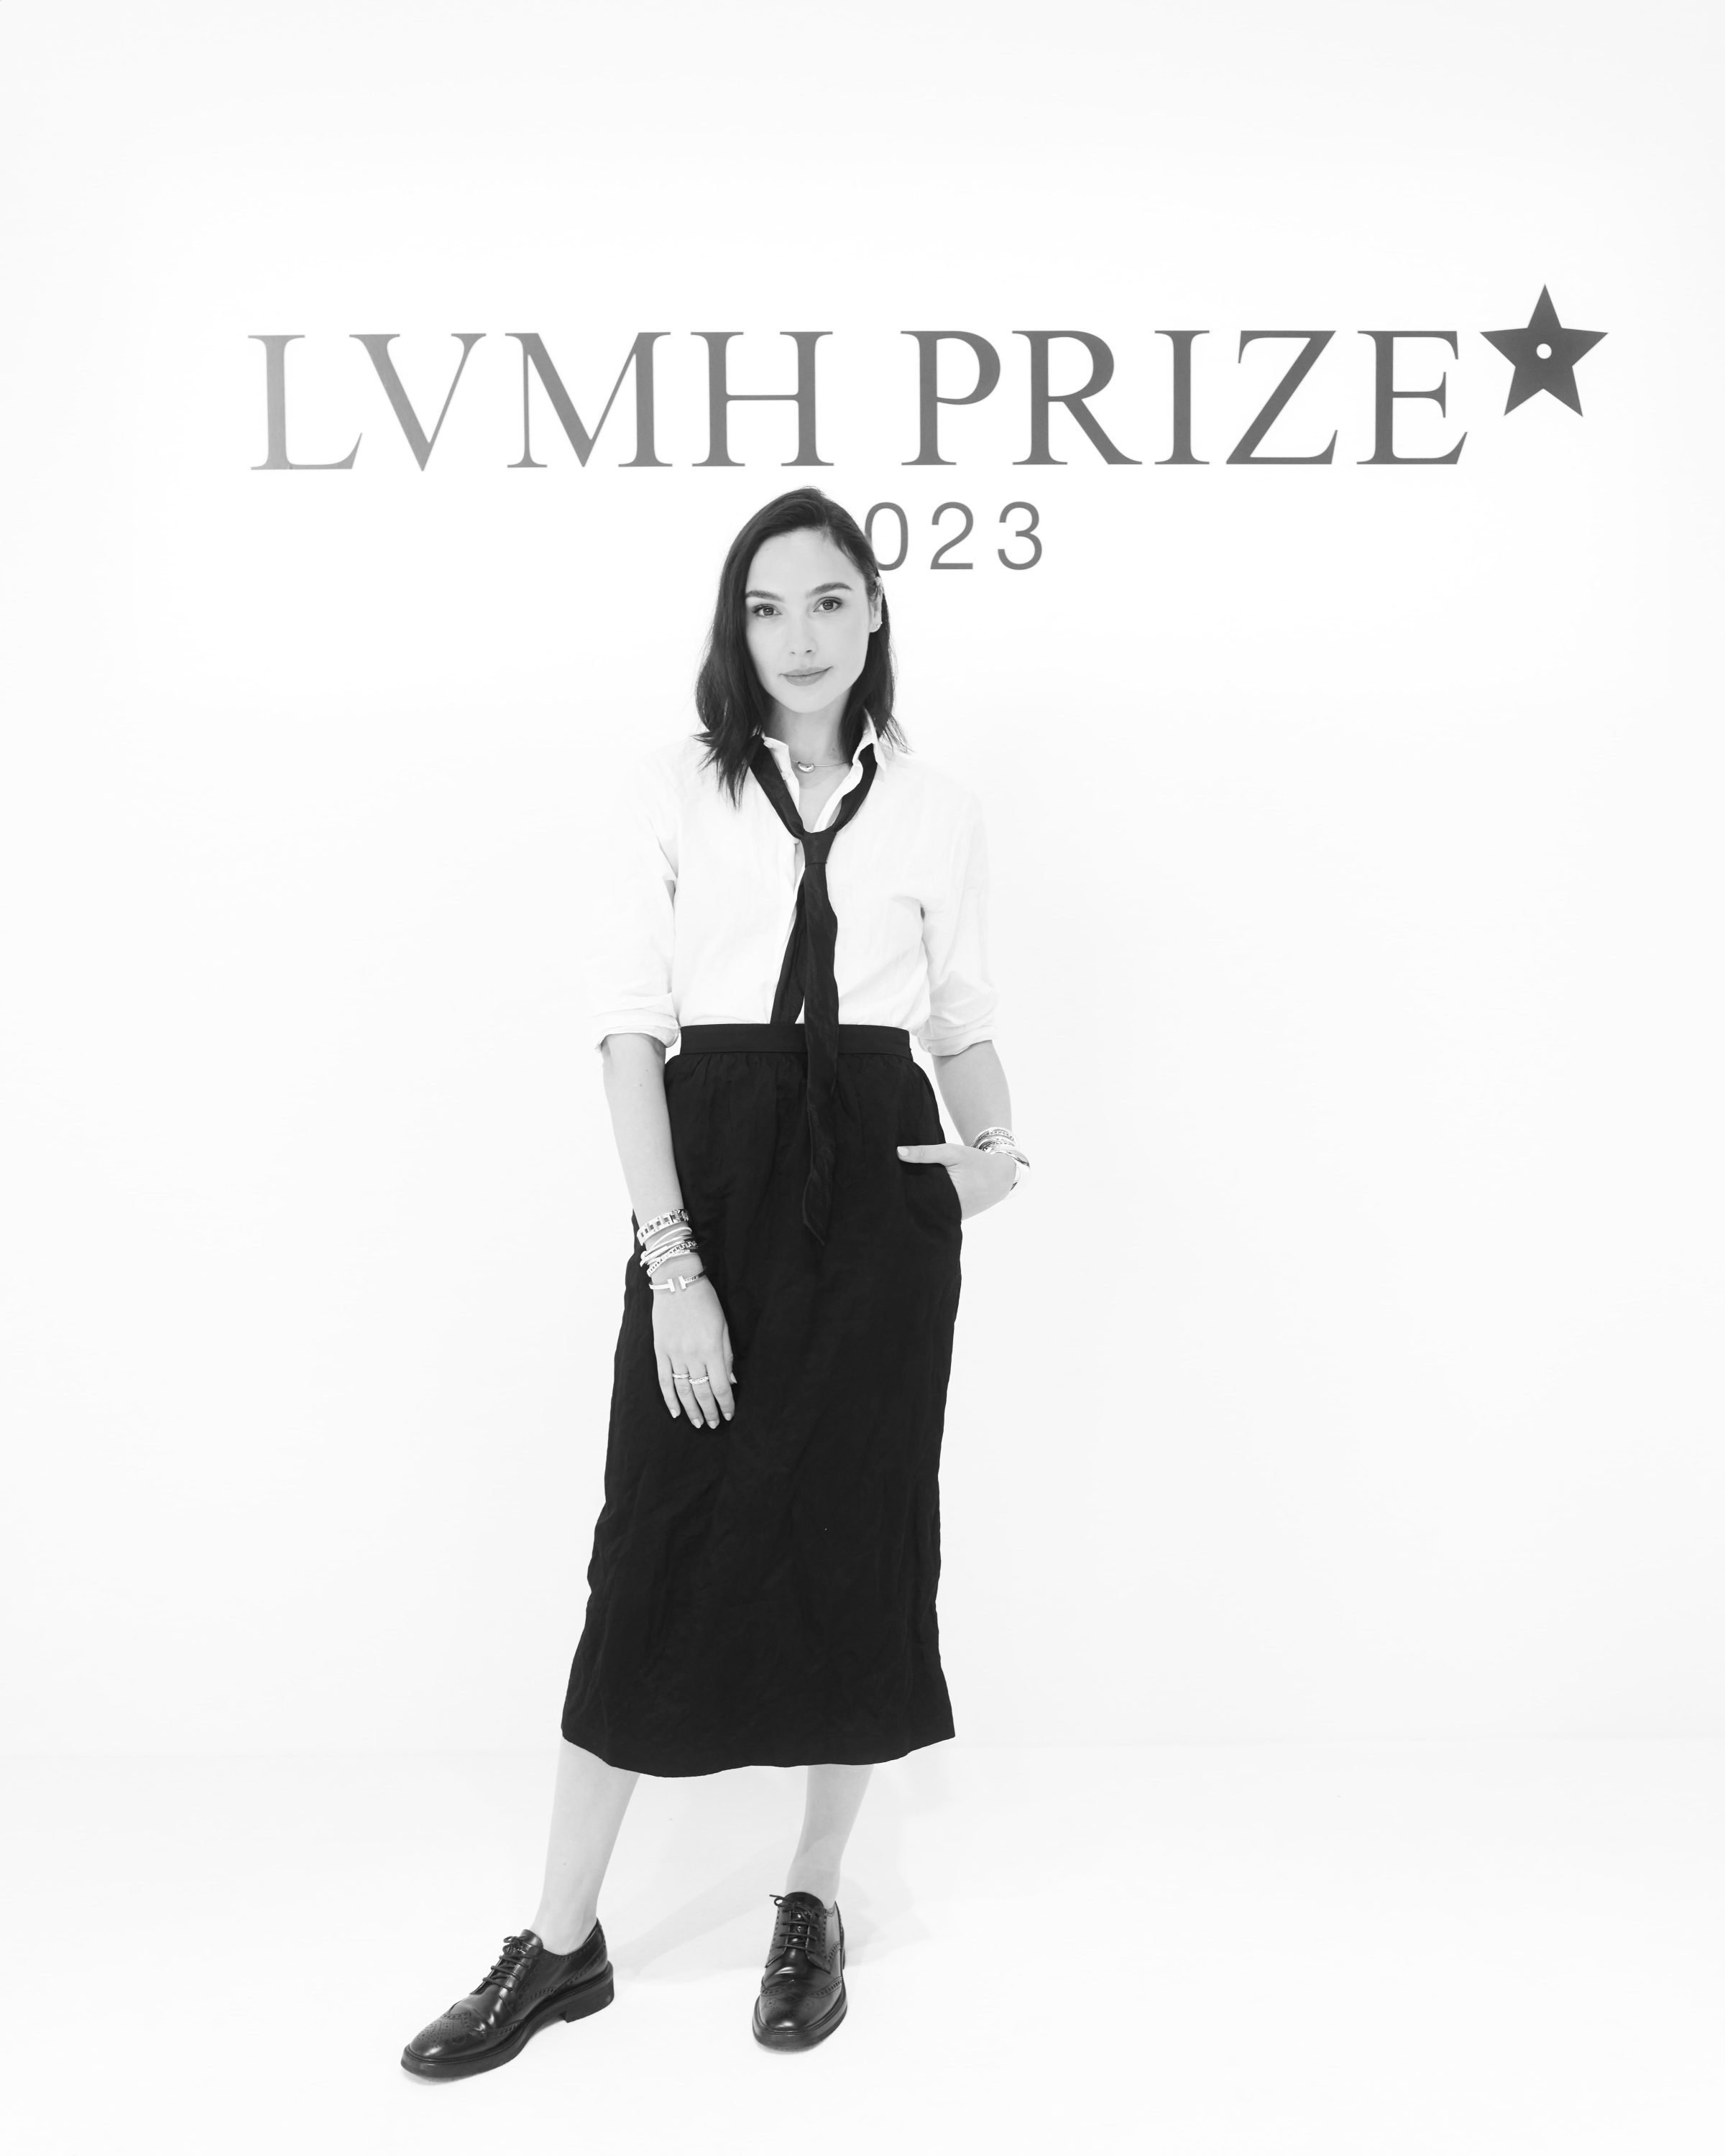 Satoshi Kuwata's Setchu Takes Home the 2023 LVMH Prize